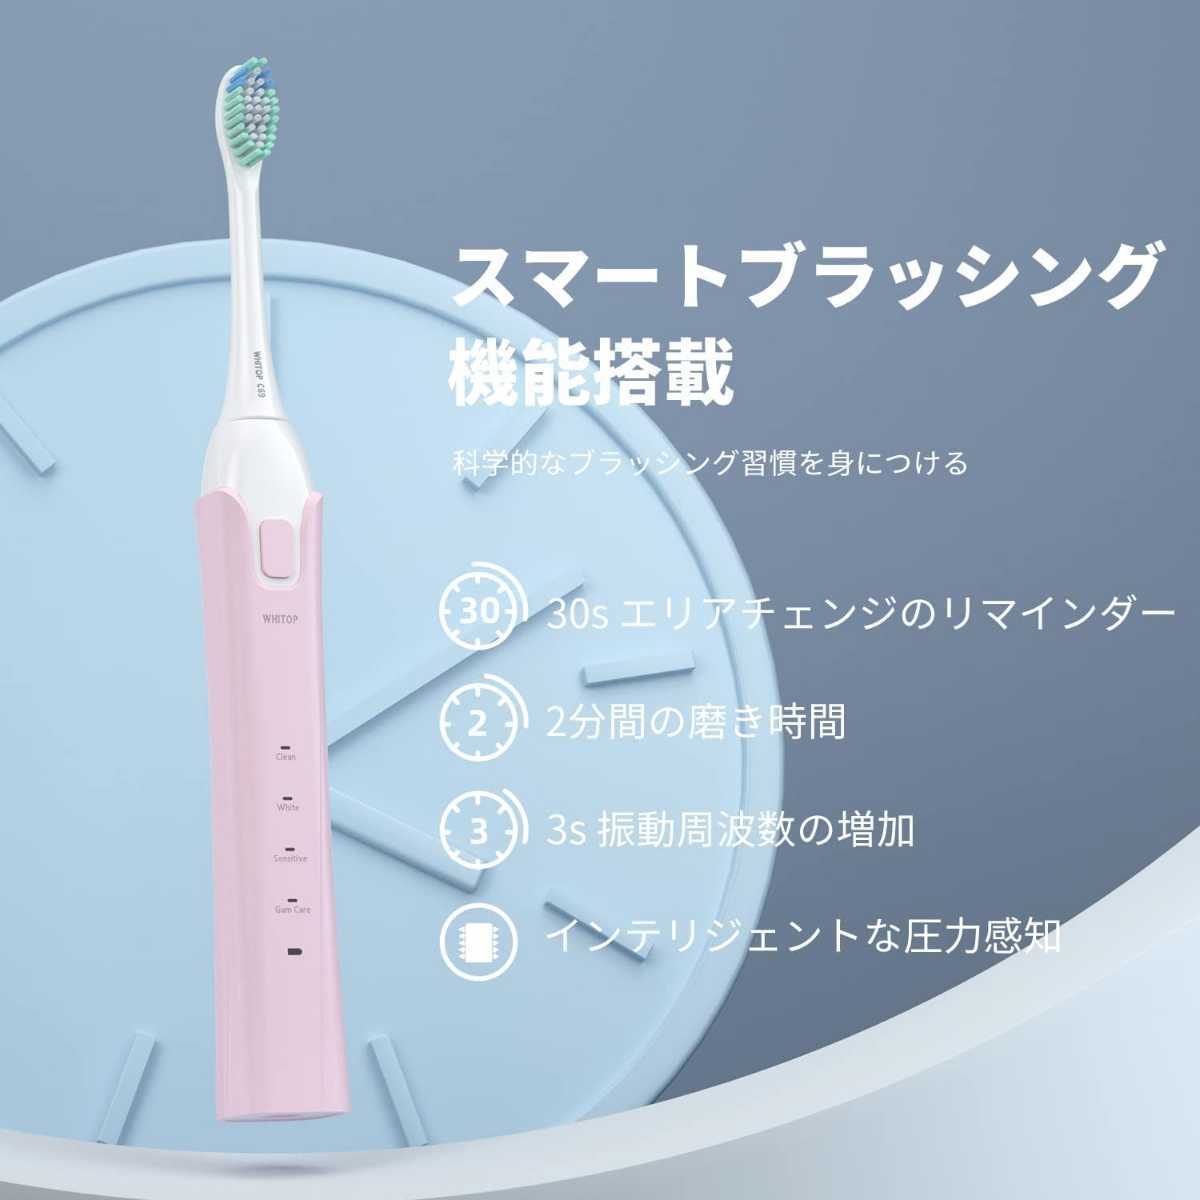  новый товар * обычная цена 6,555 иен розовый * женский аукстический электрический зубная щетка * Smart b веревка функция беспроводной зарядка 4 режим давление сенсор Smart таймер 